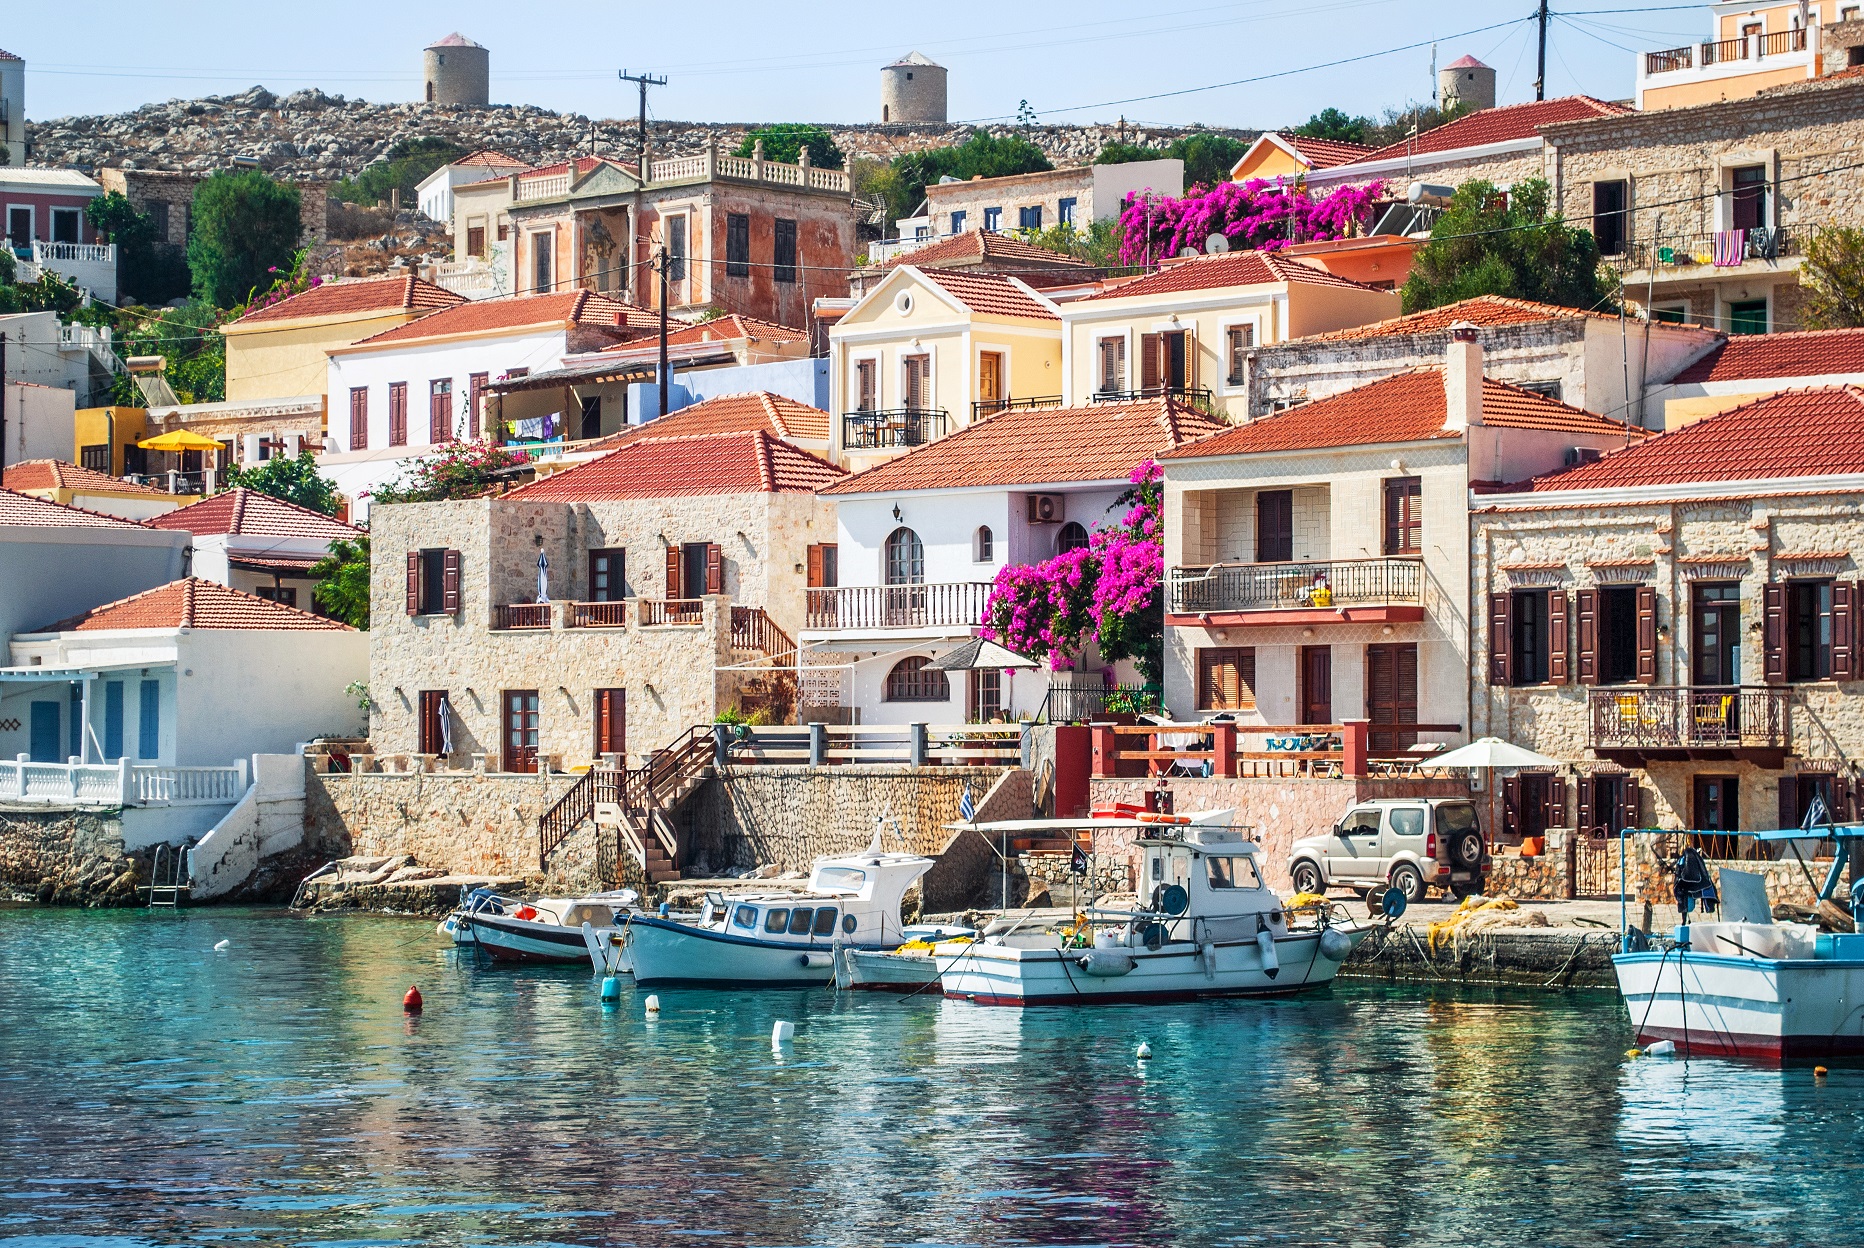 Πρώτη φορά στη Xάλκη – Το αριστοκρατικό νησί με την πανέμορφη αρχιτεκτονική  και τα τιρκουάζ νερά | travel.gr